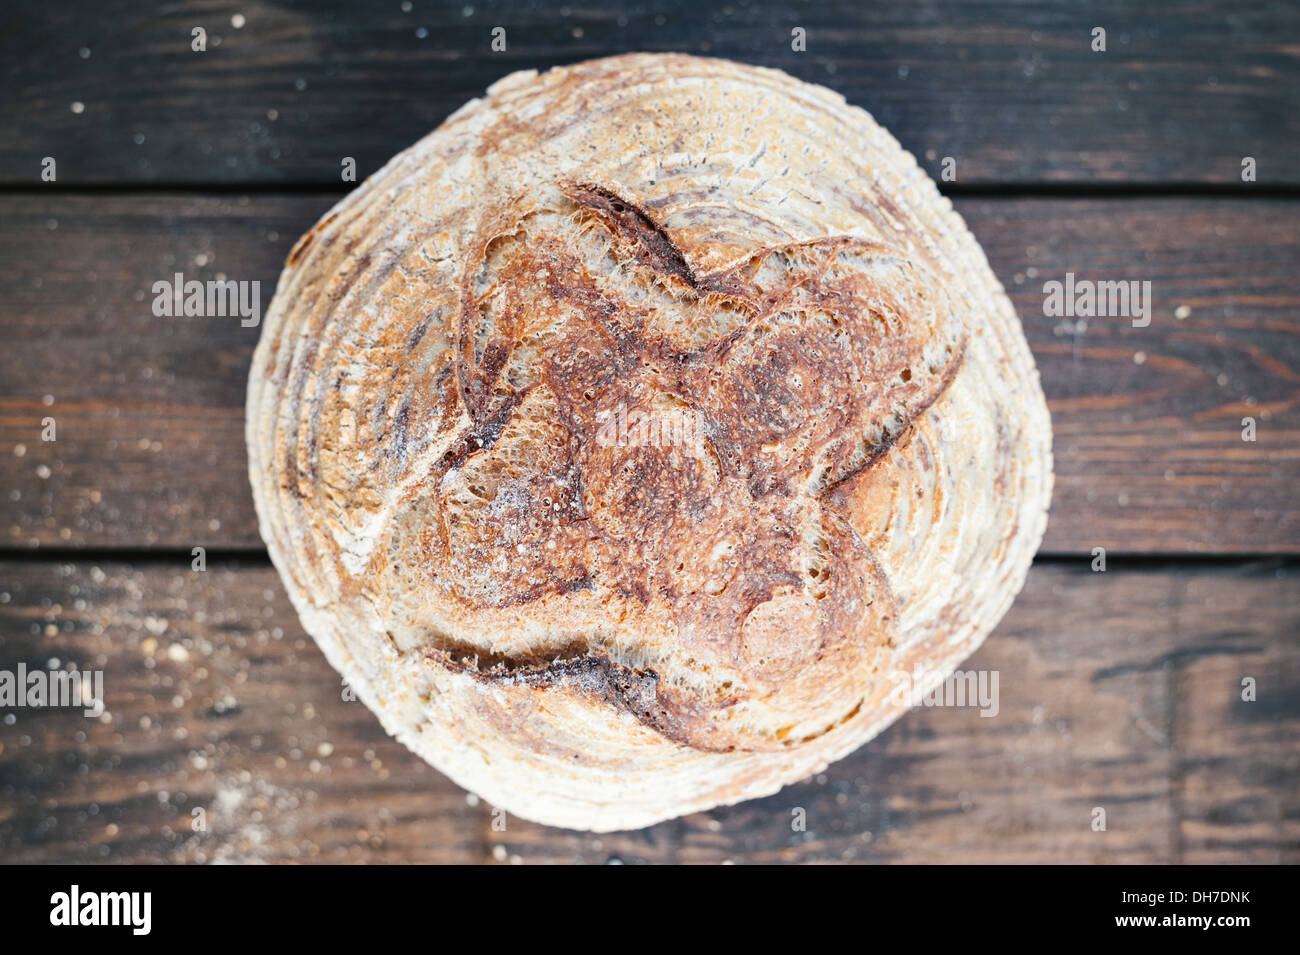 Du pain artisanal - du pain au levain boule Banque D'Images